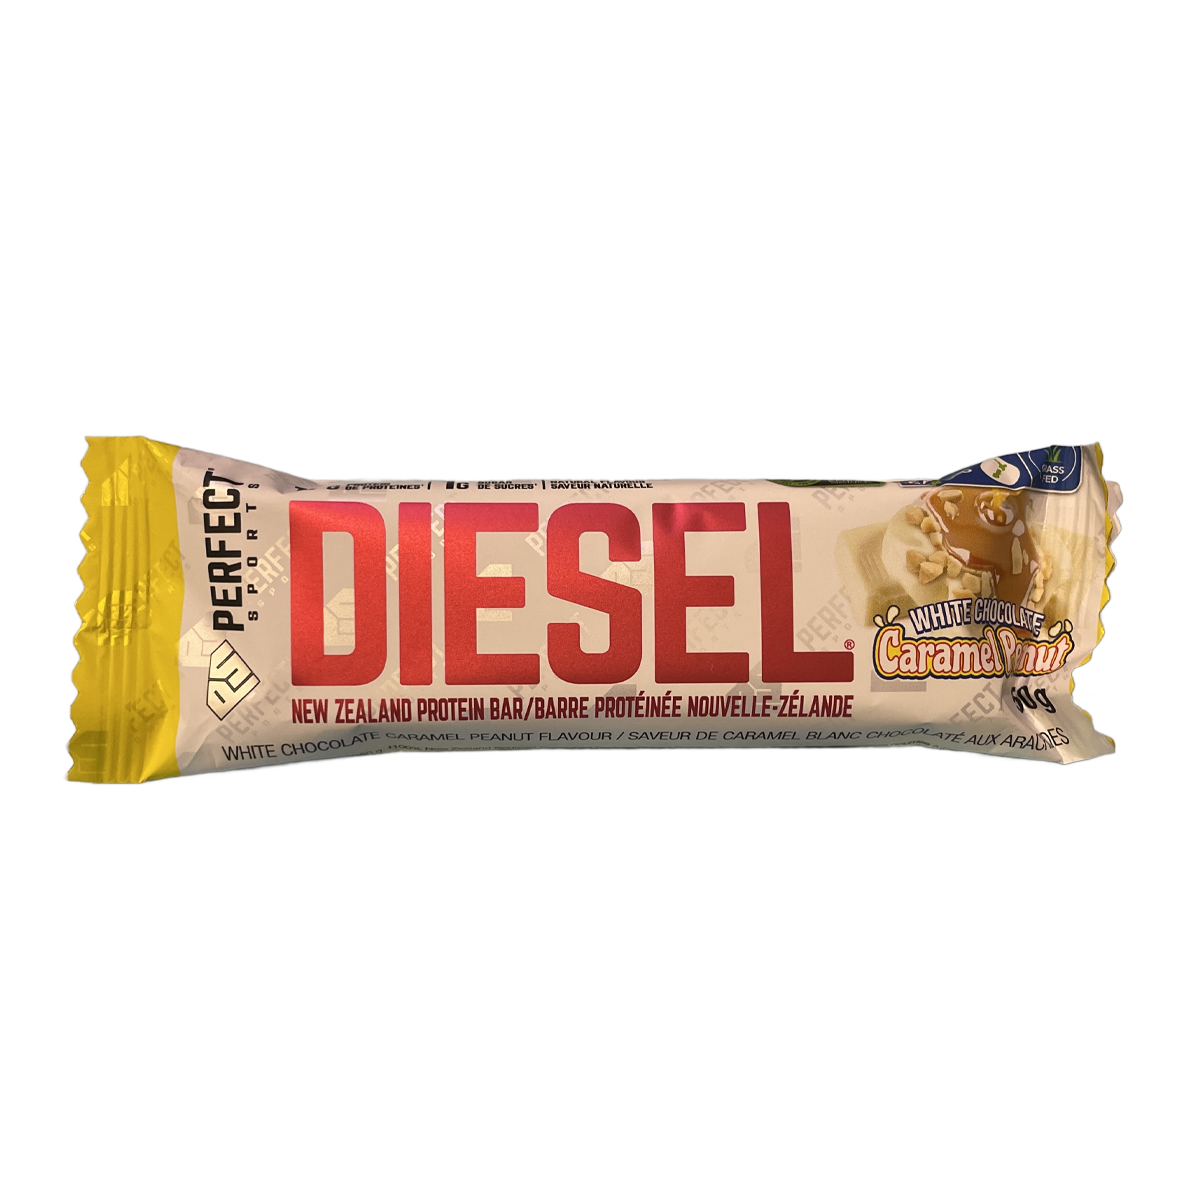 Diesel Protein Bar White Chocolate Caramel Peanut 50g